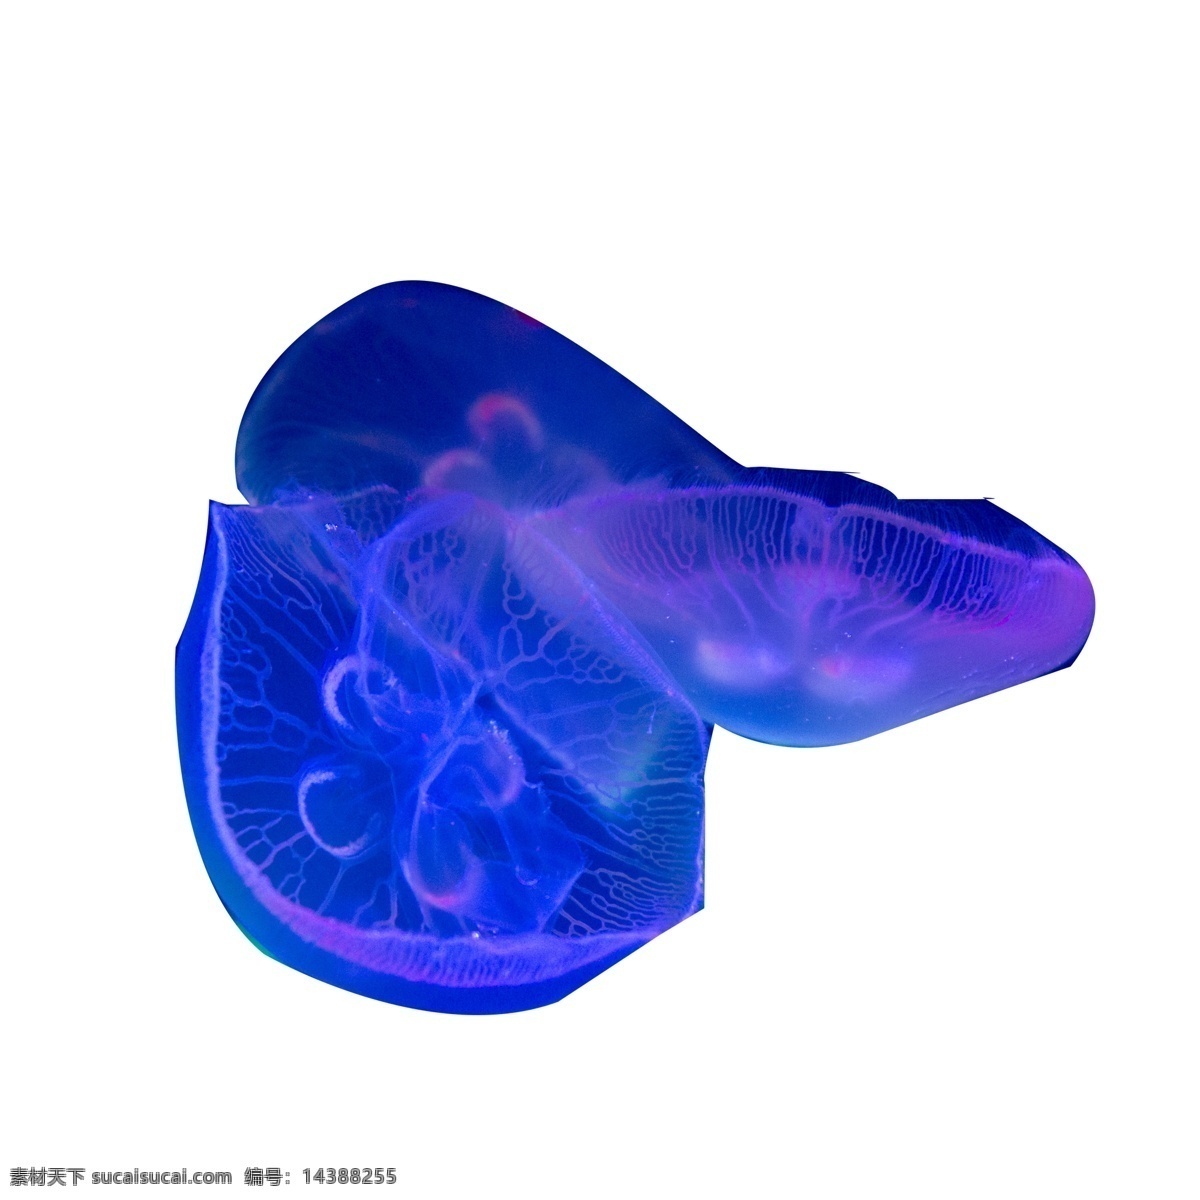 蓝色 发光 水母 免 扣 图 海洋生物 发光的 水母免扣图 海洋水母 免扣图